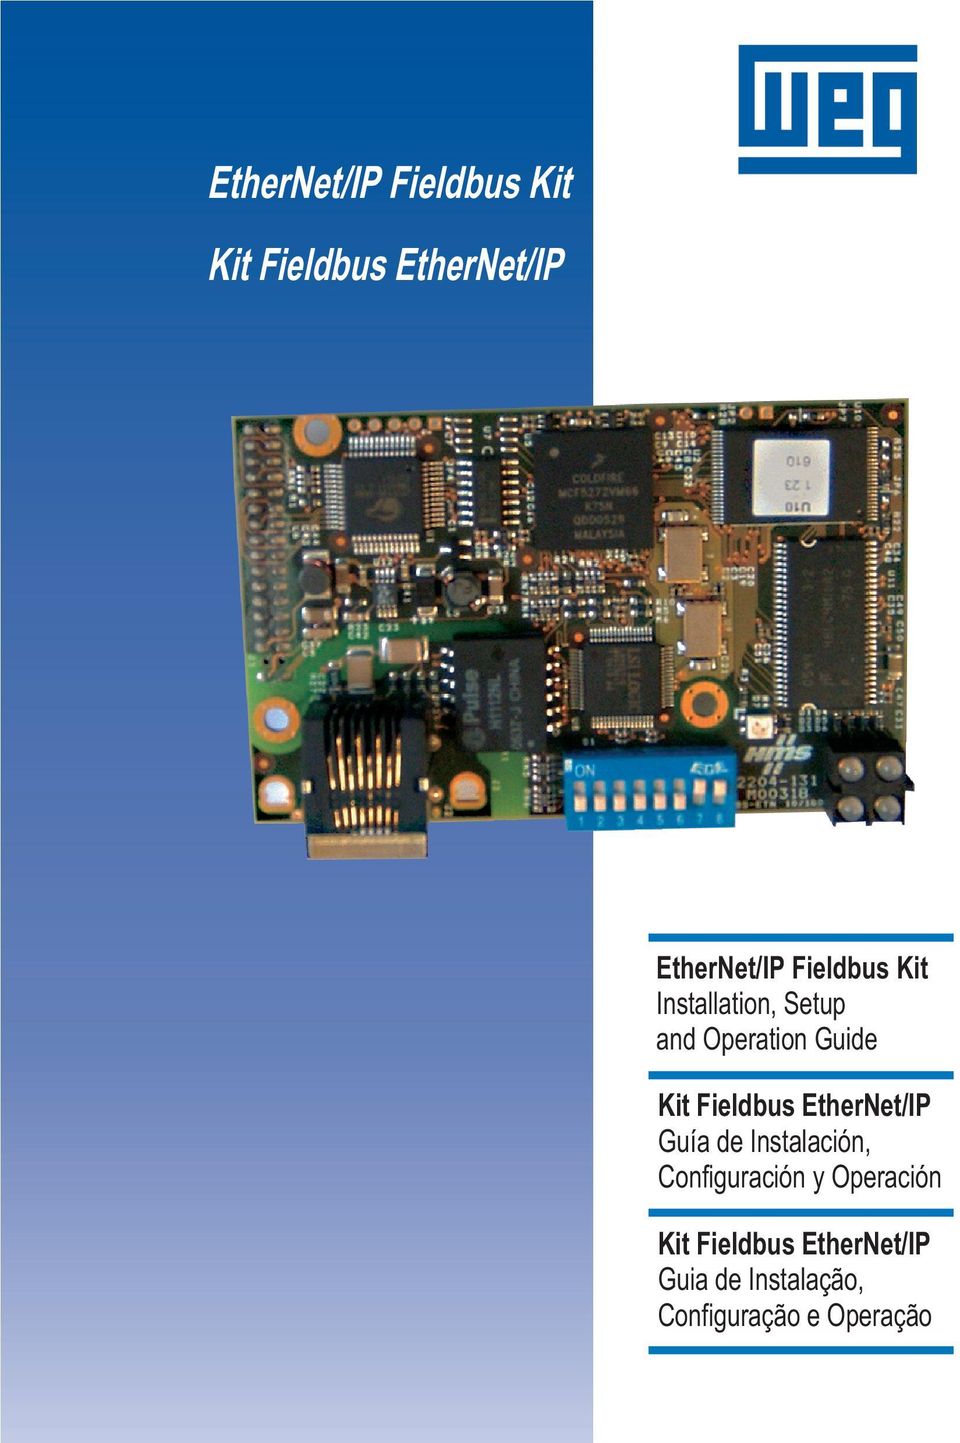 Fieldbus EtherNet/IP Guía de Instalación, Configuración y